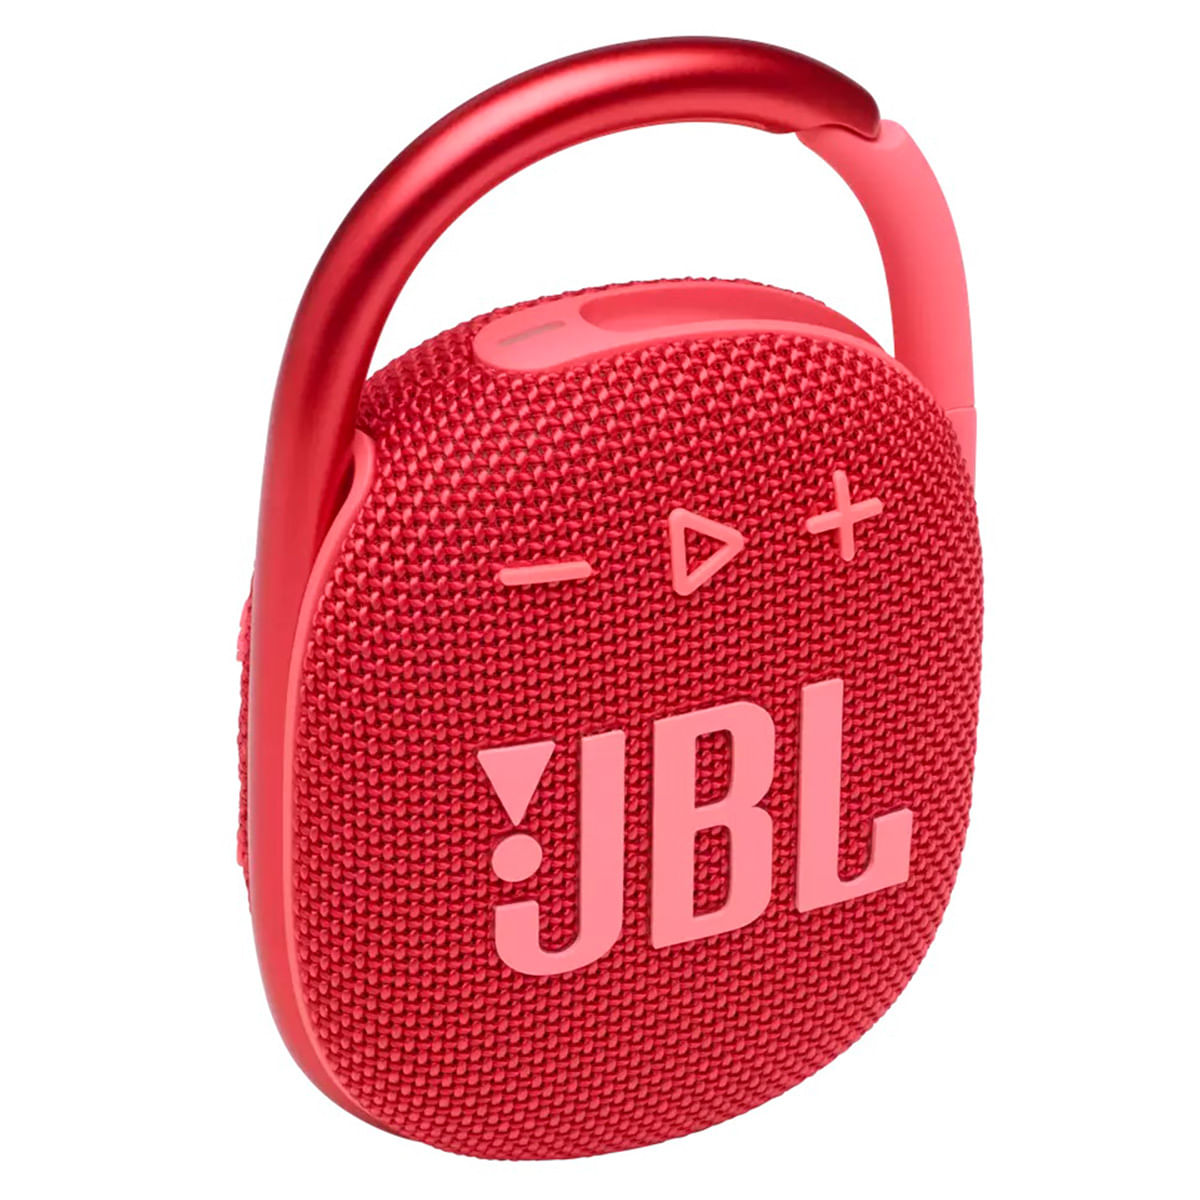 JBLClip4-Vermelho-Frente01